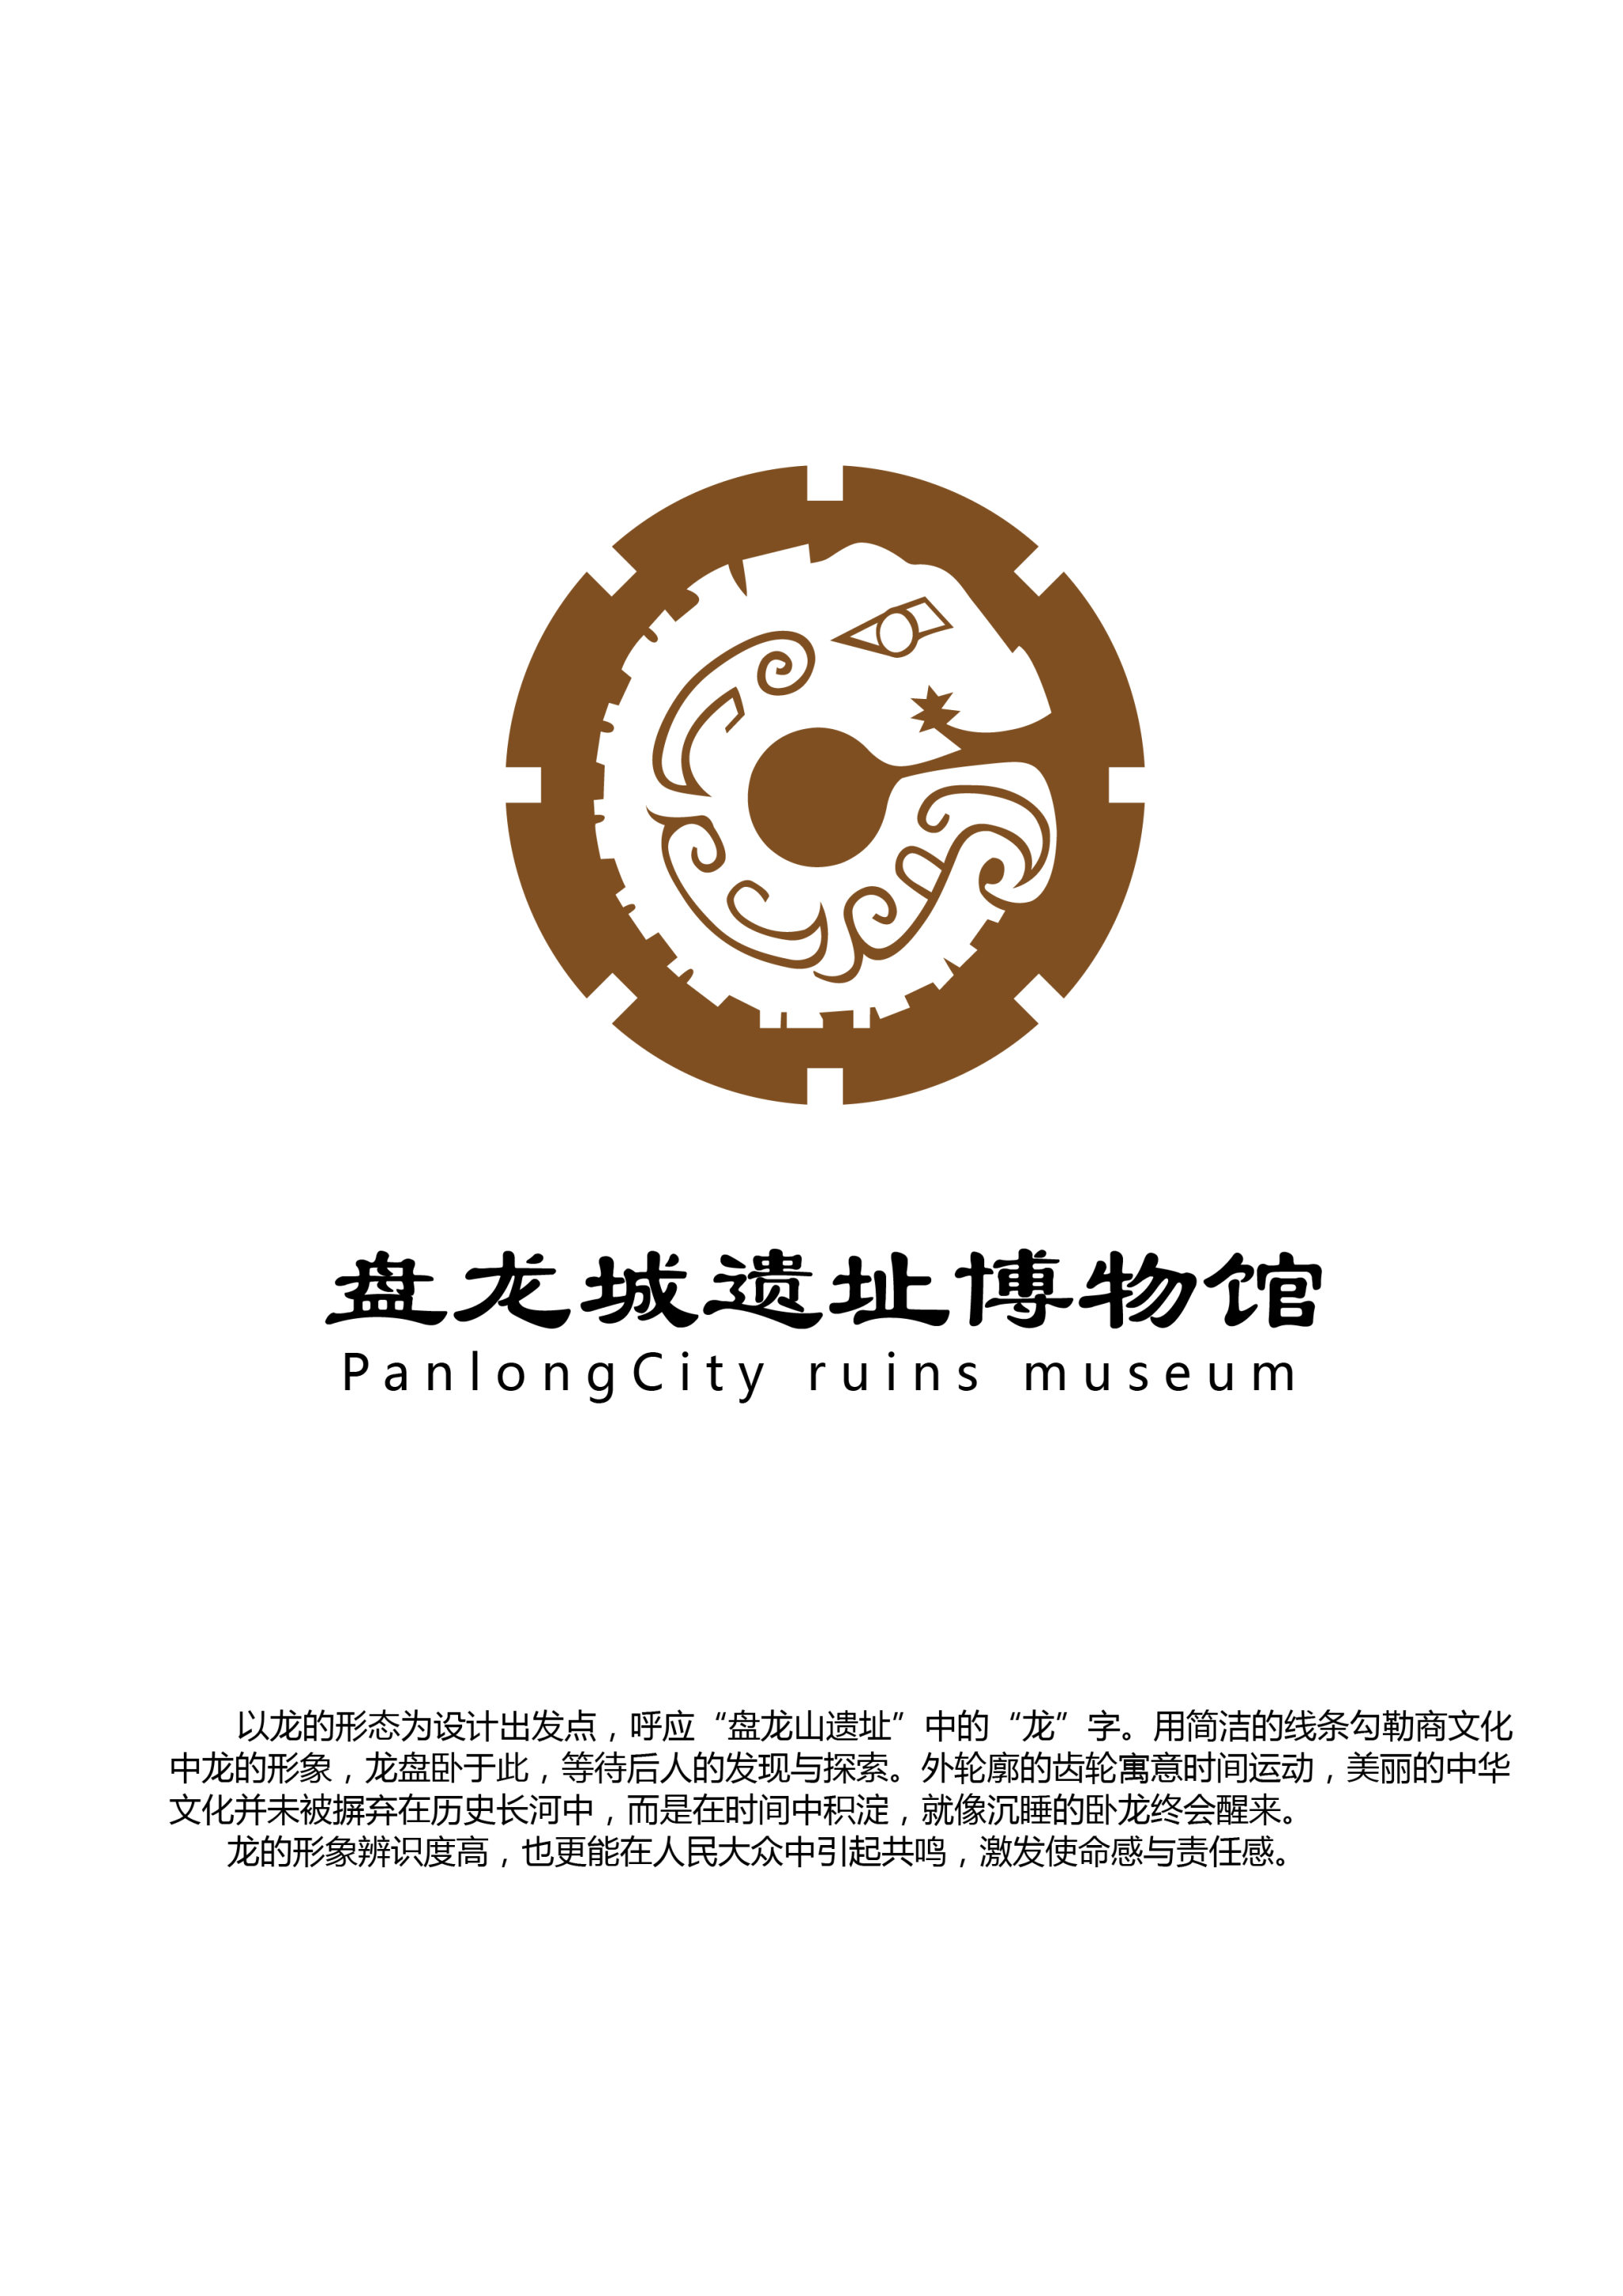 盘龙城遗址logo设计